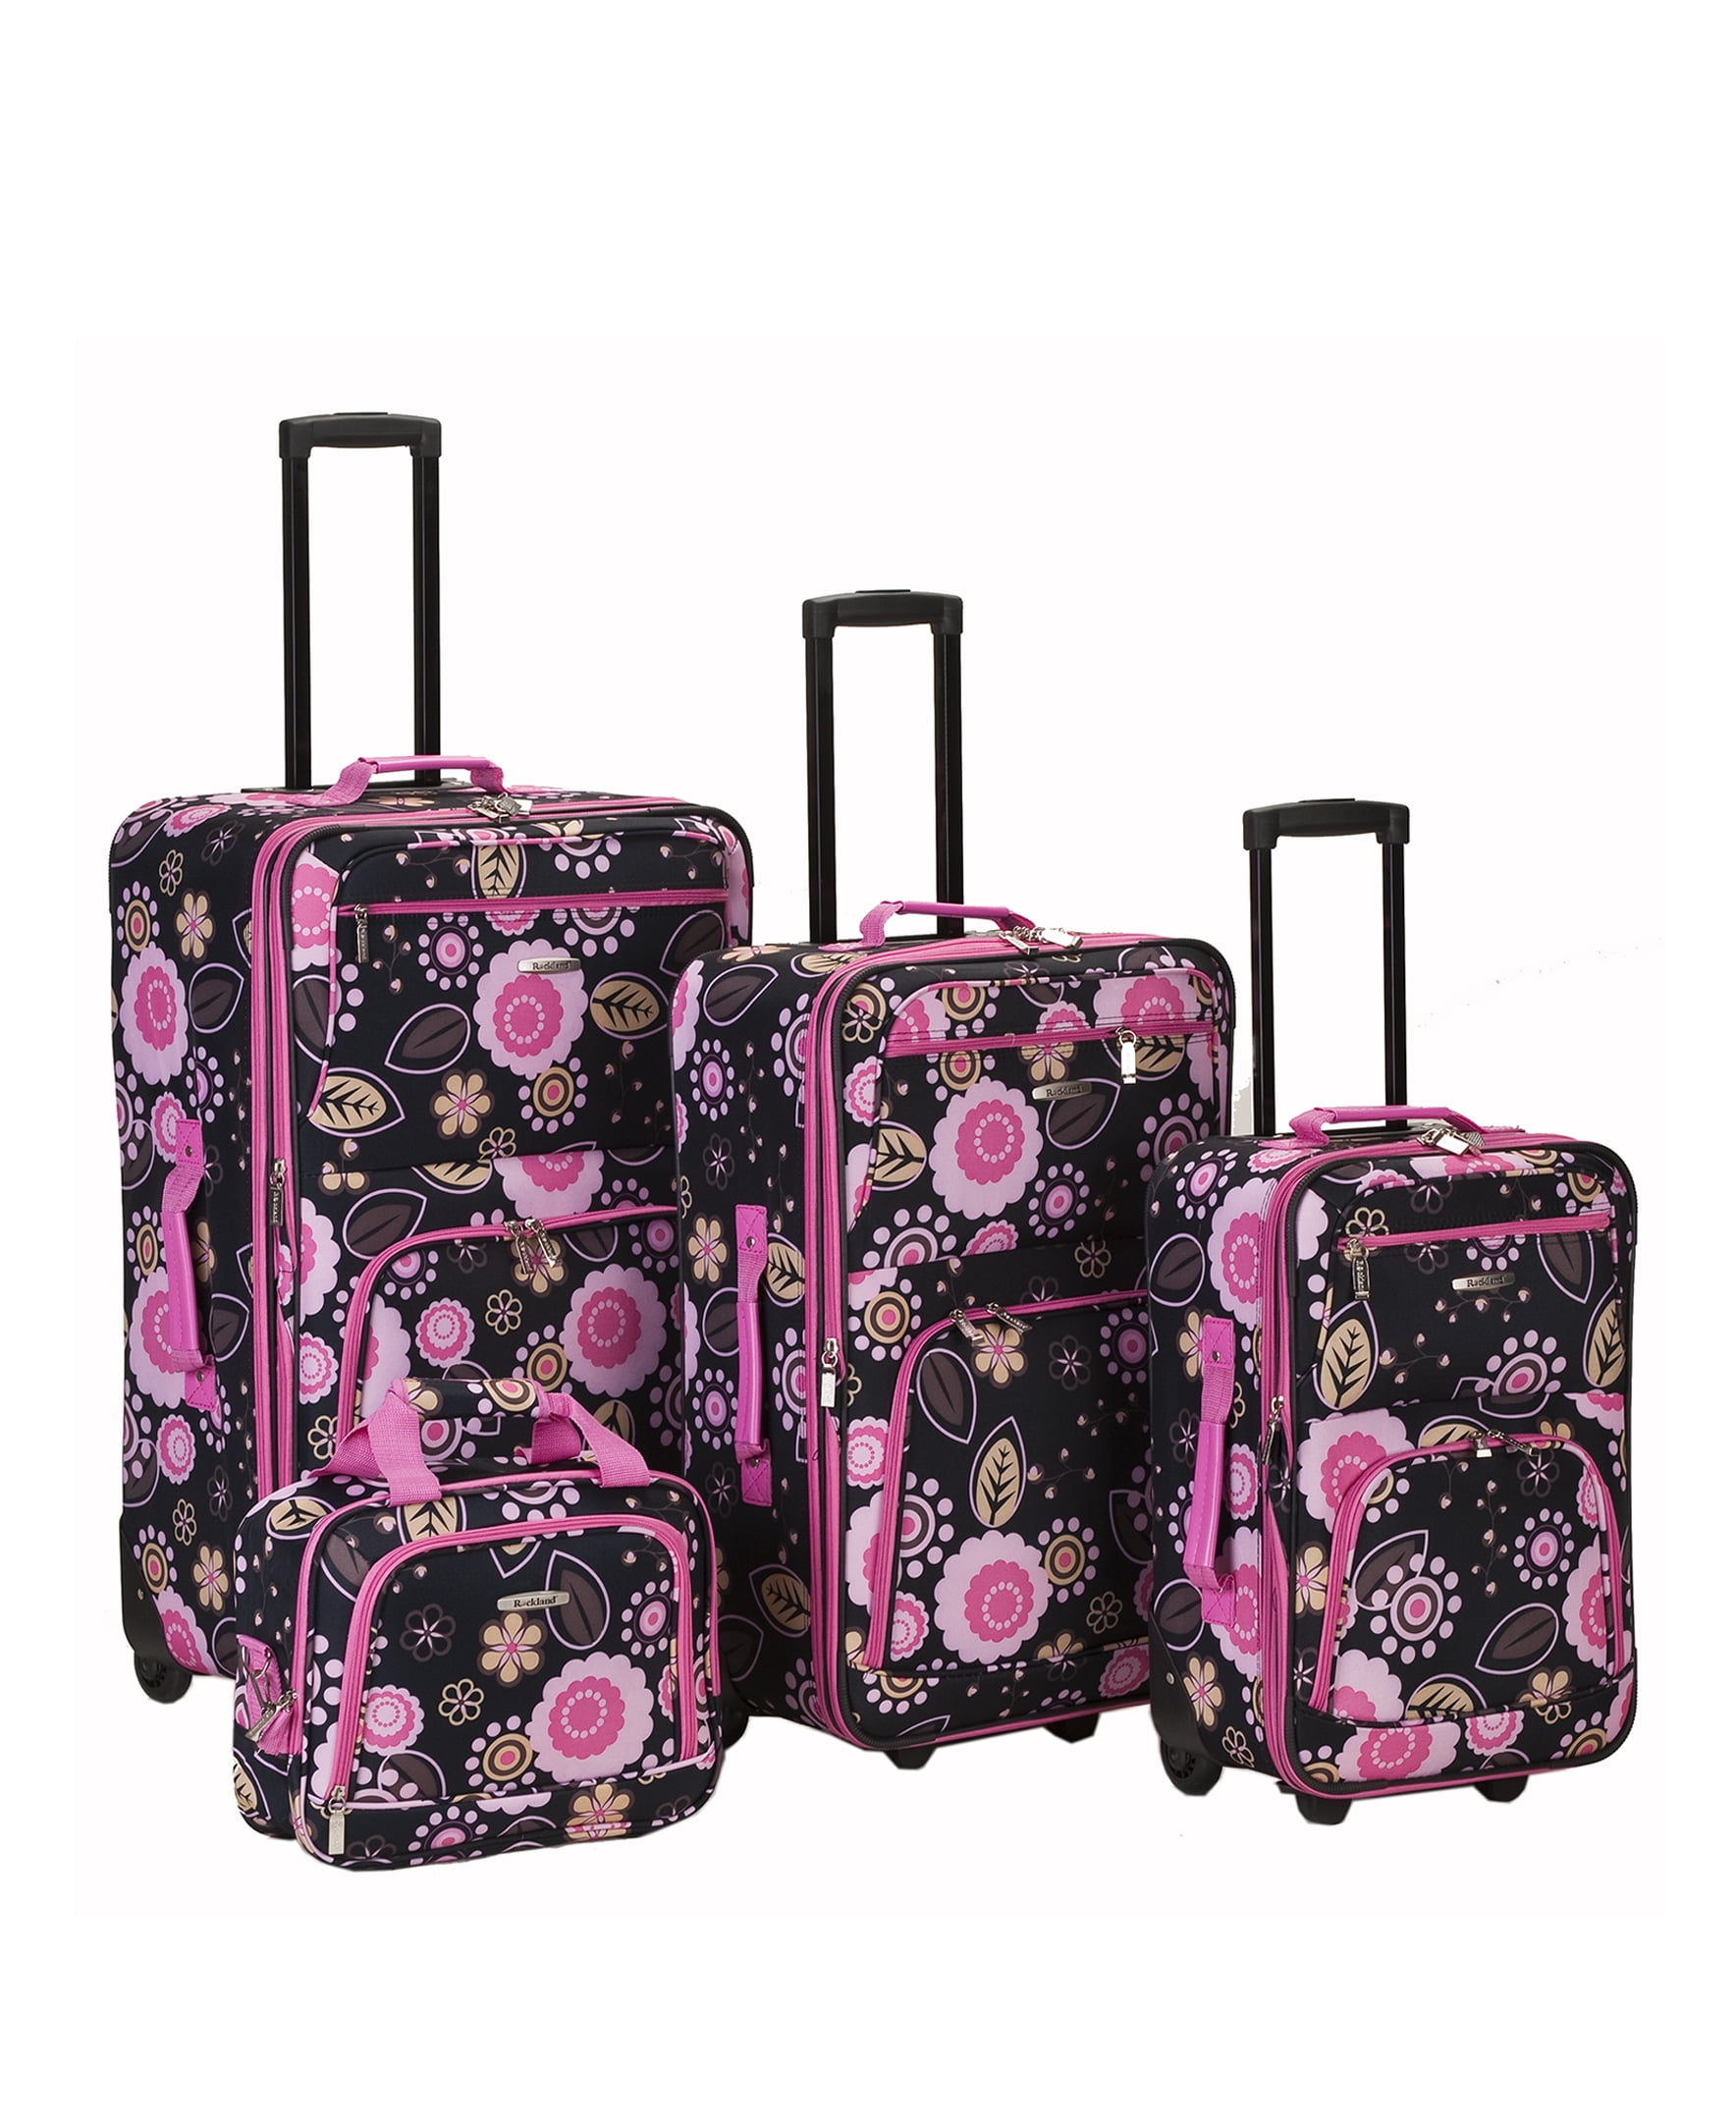 Rockland Luggage Impulse Expandable Luggage 4-Piece Softside Luggage ...